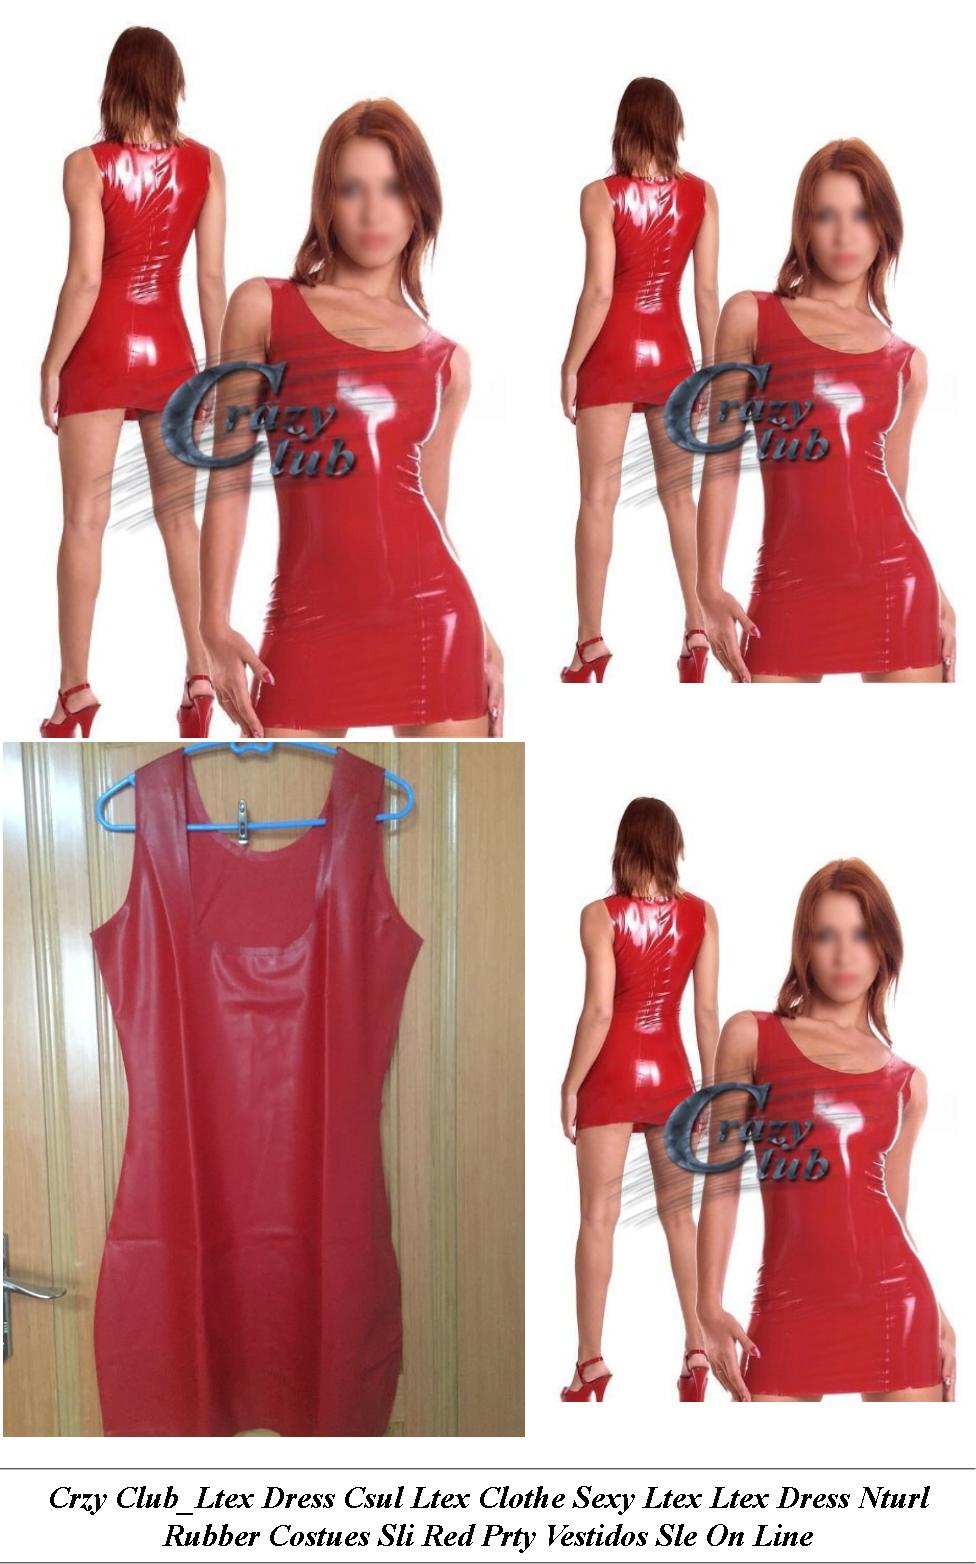 Plus Size Formal Dresses - Women Dresses Sale - Little Black Dress - Cheap Clothes Online